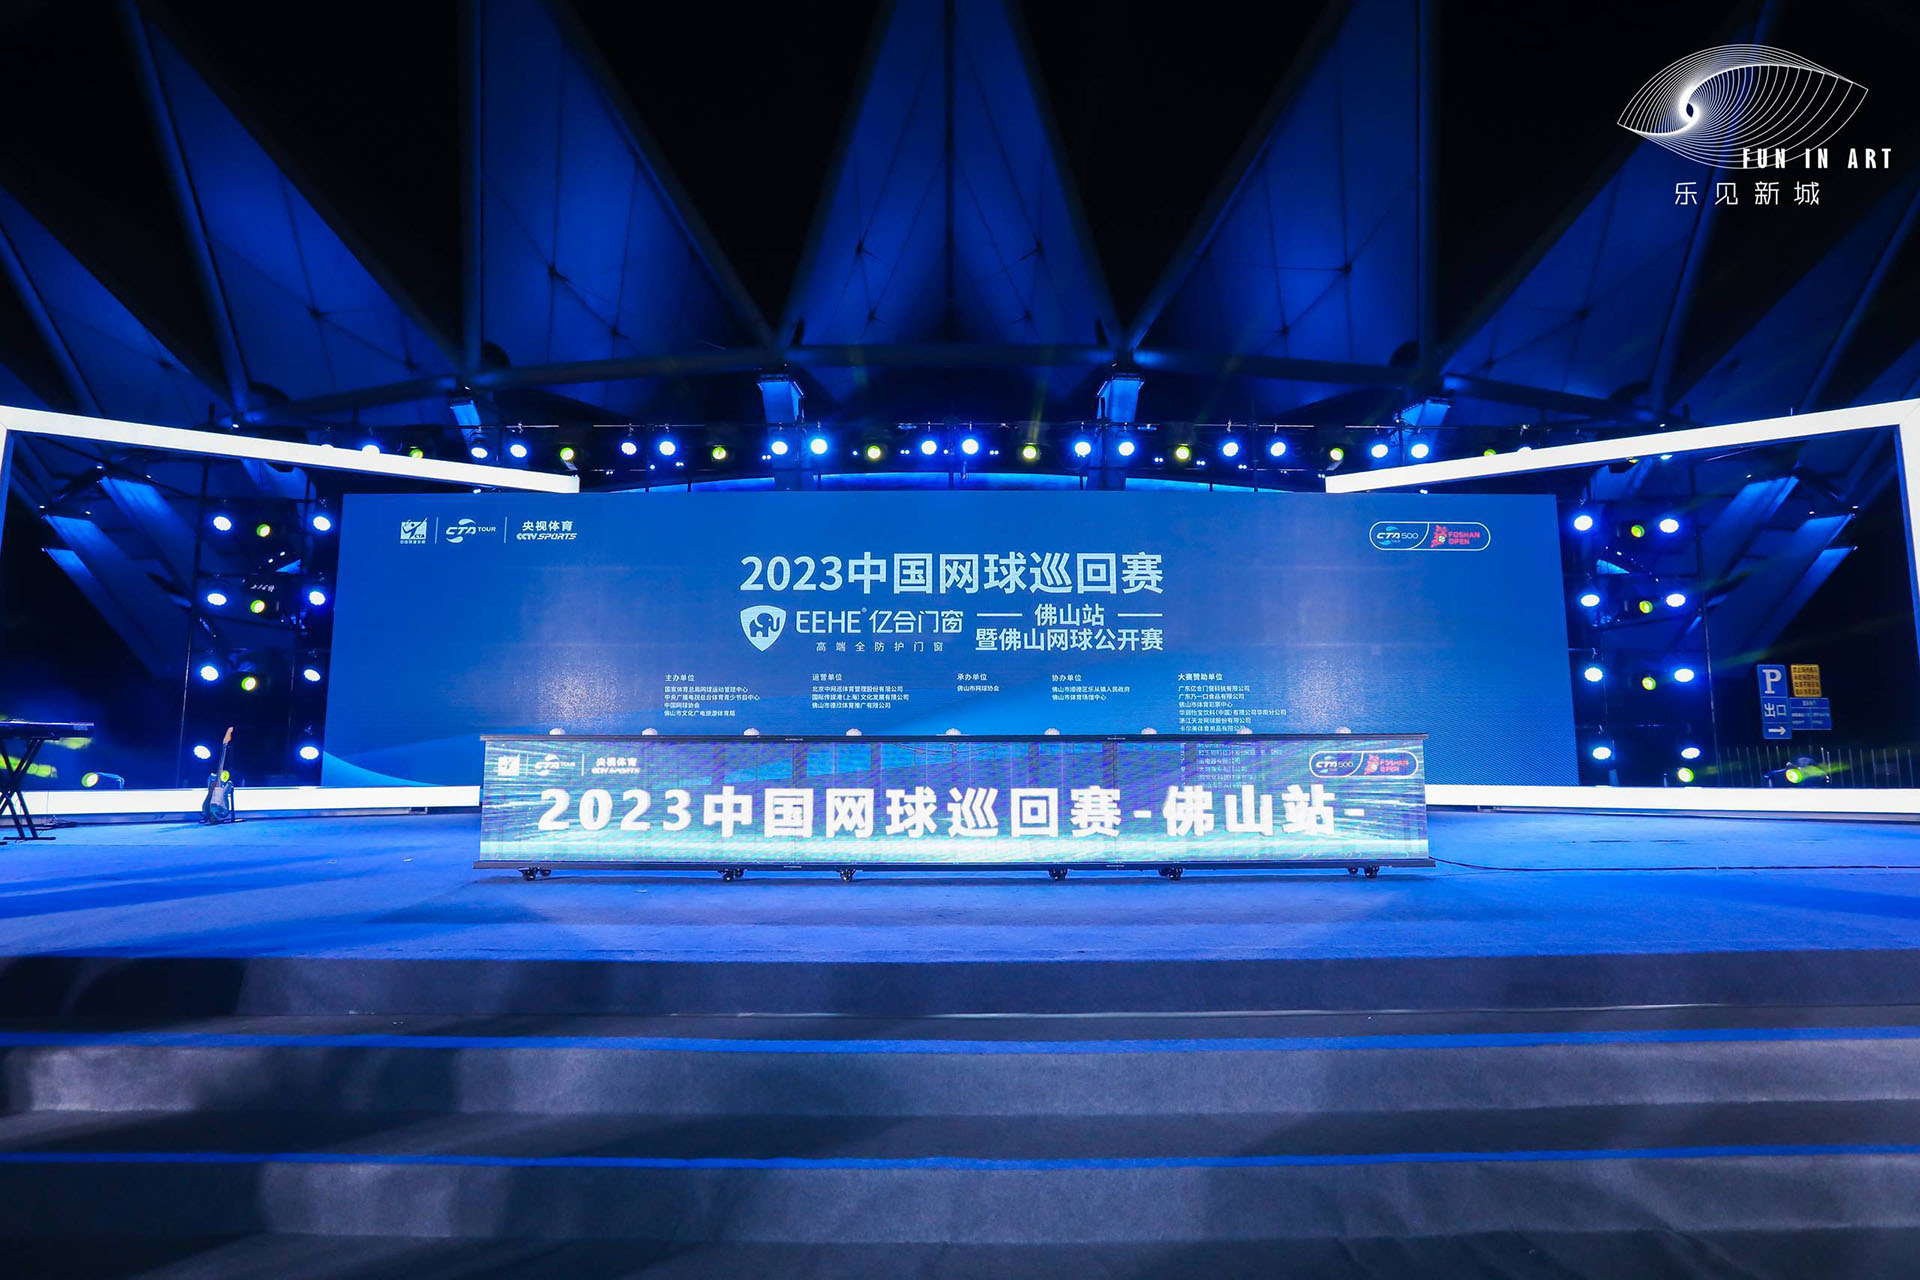 2023中国网球巡回赛暨“欧陆娱乐”佛山网球公开赛盛大开幕